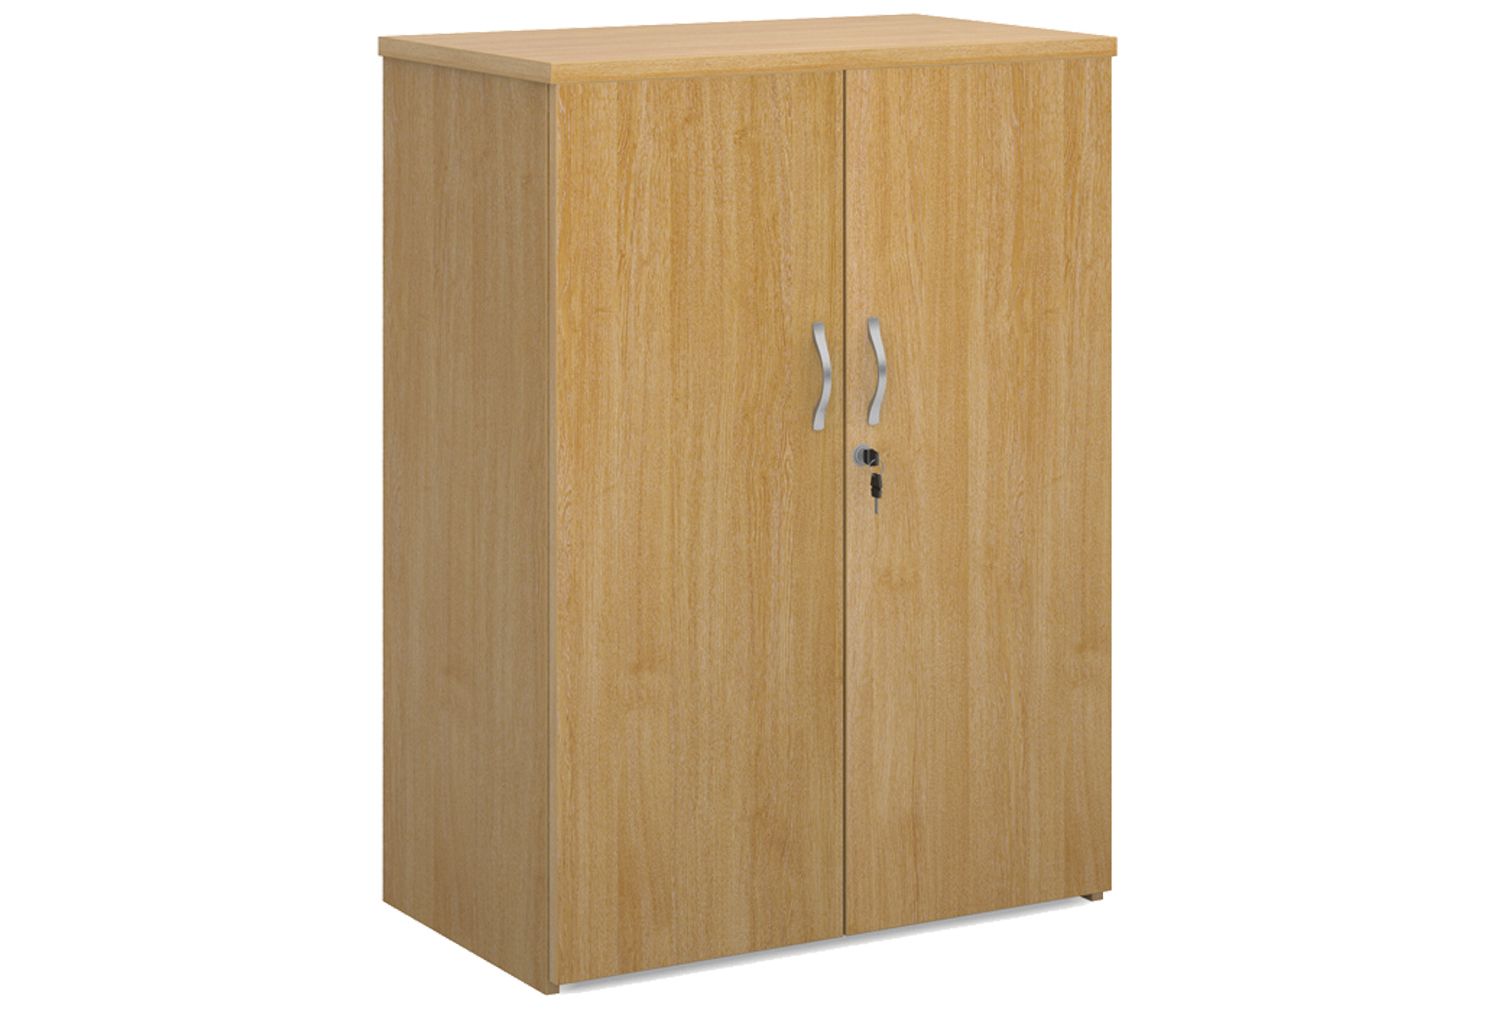 All Oak Cupboard, 2 Shelf - 80wx47dx109h (cm), Fully Installed